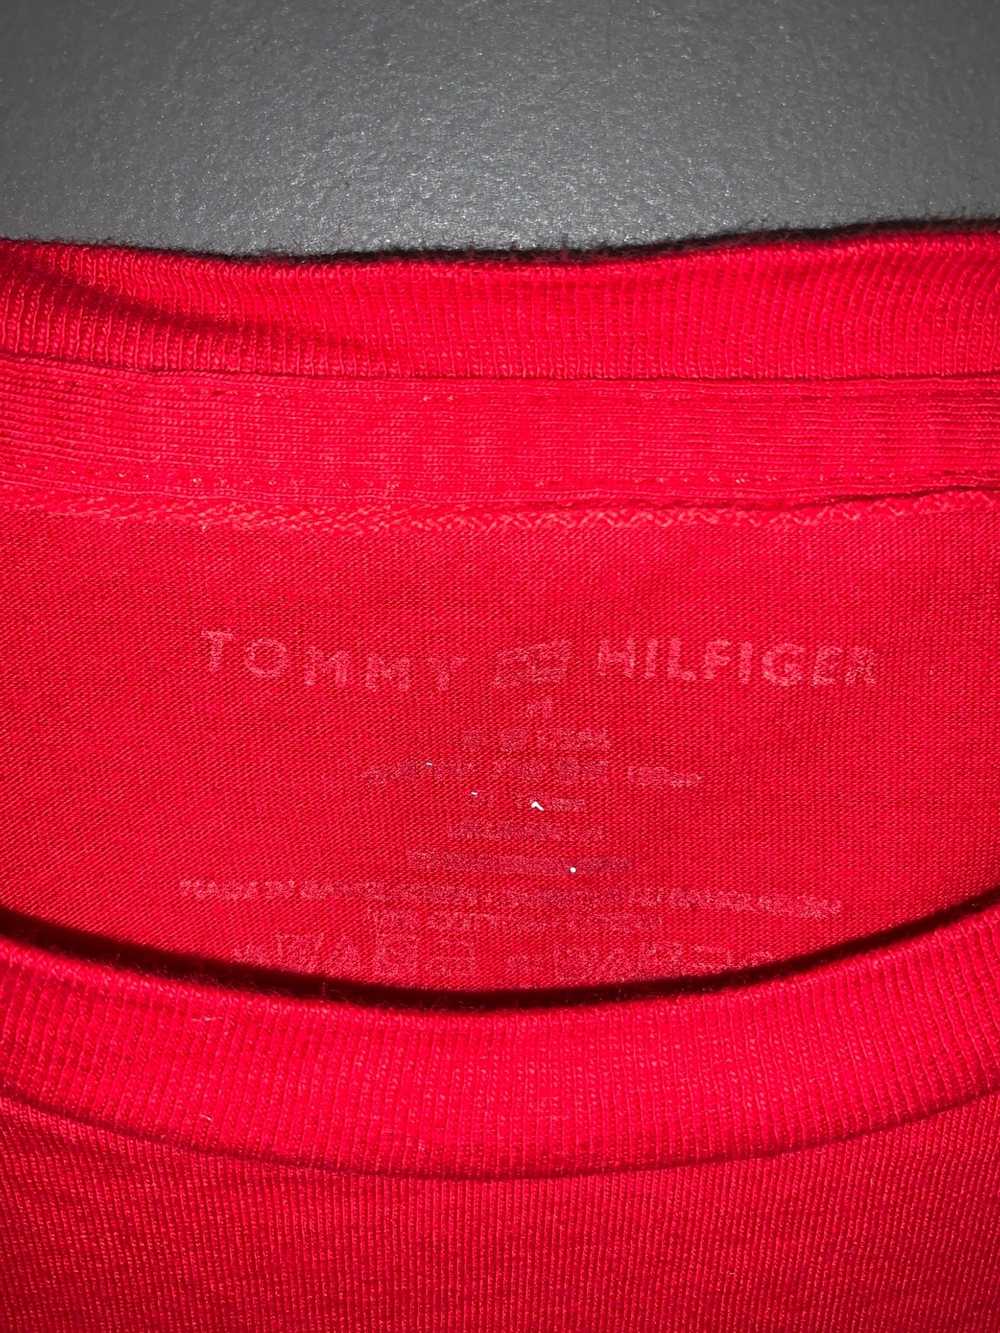 Tommy Hilfiger Mini Flag Tee - image 2